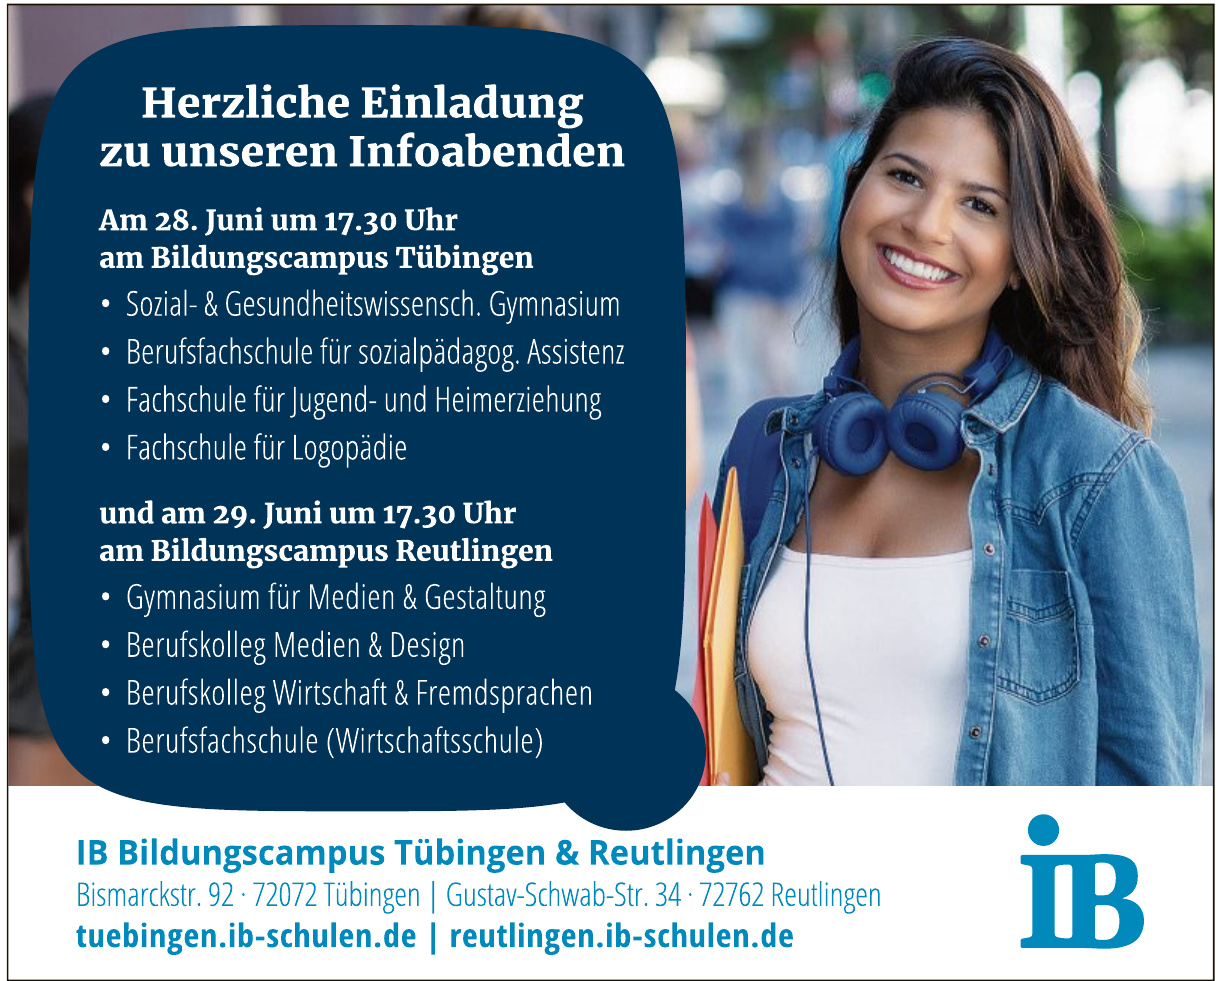 IB Bildungscampus Tübingen & Reutlingen